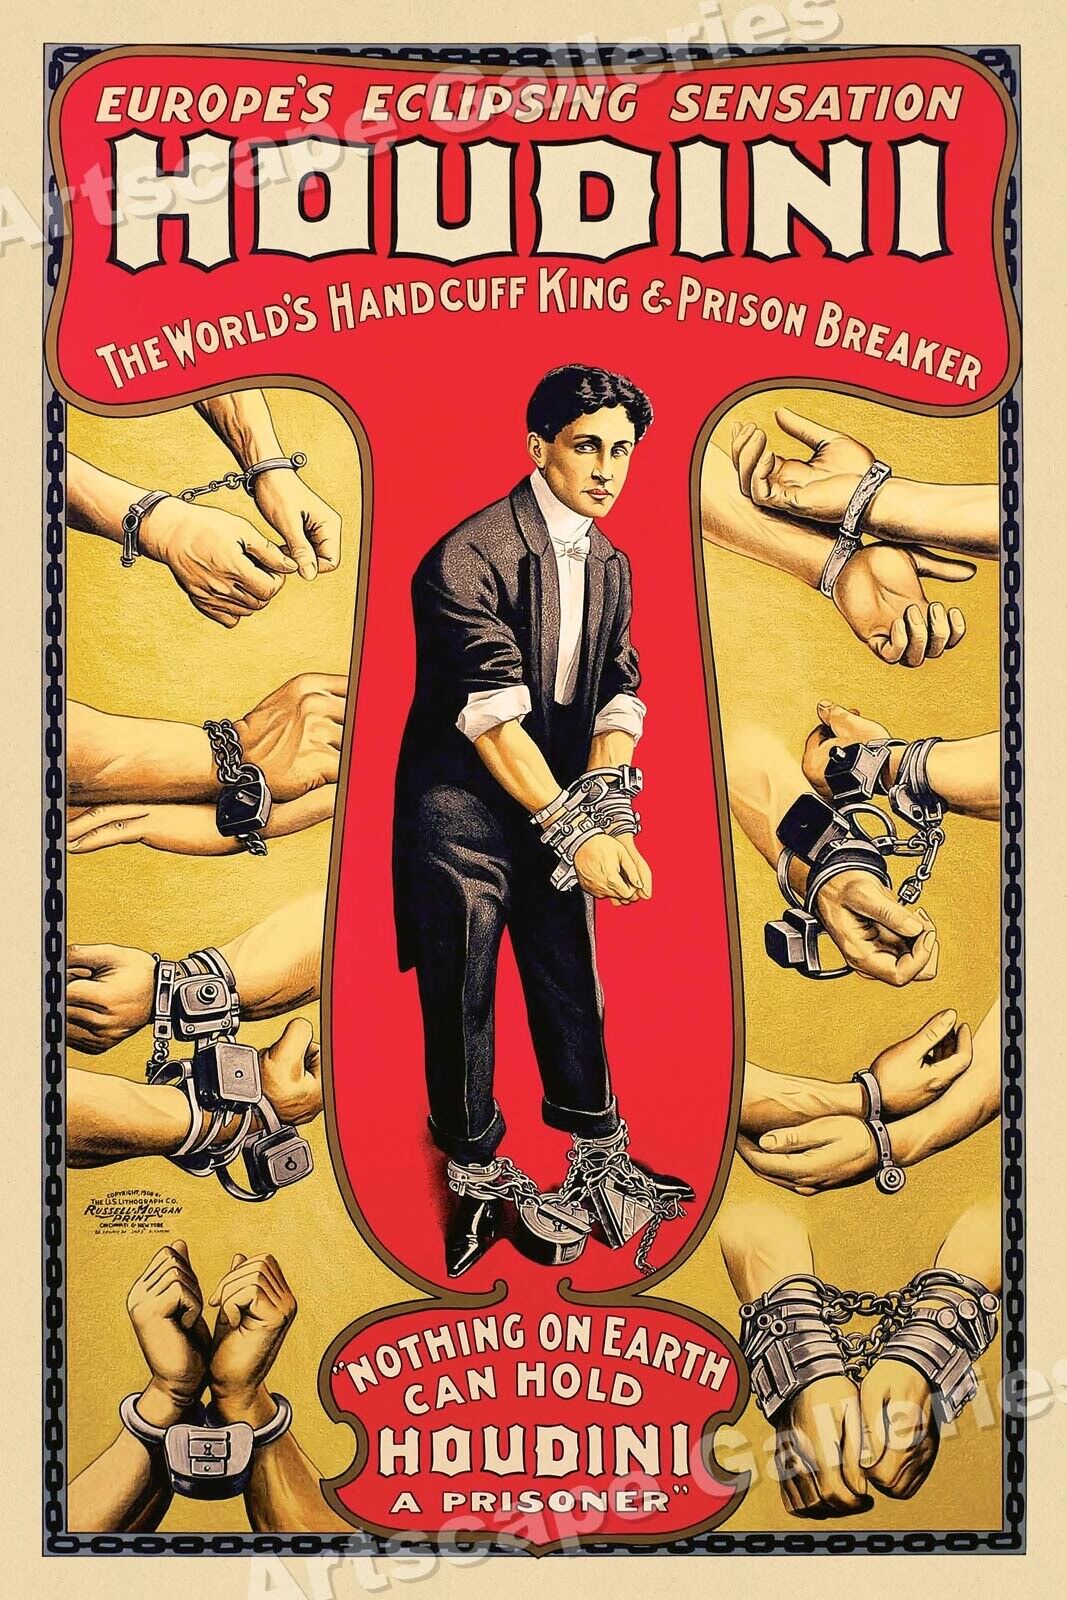 1920's Harry Houdini Classic Handcuff Escape Magic Poster - 24x36